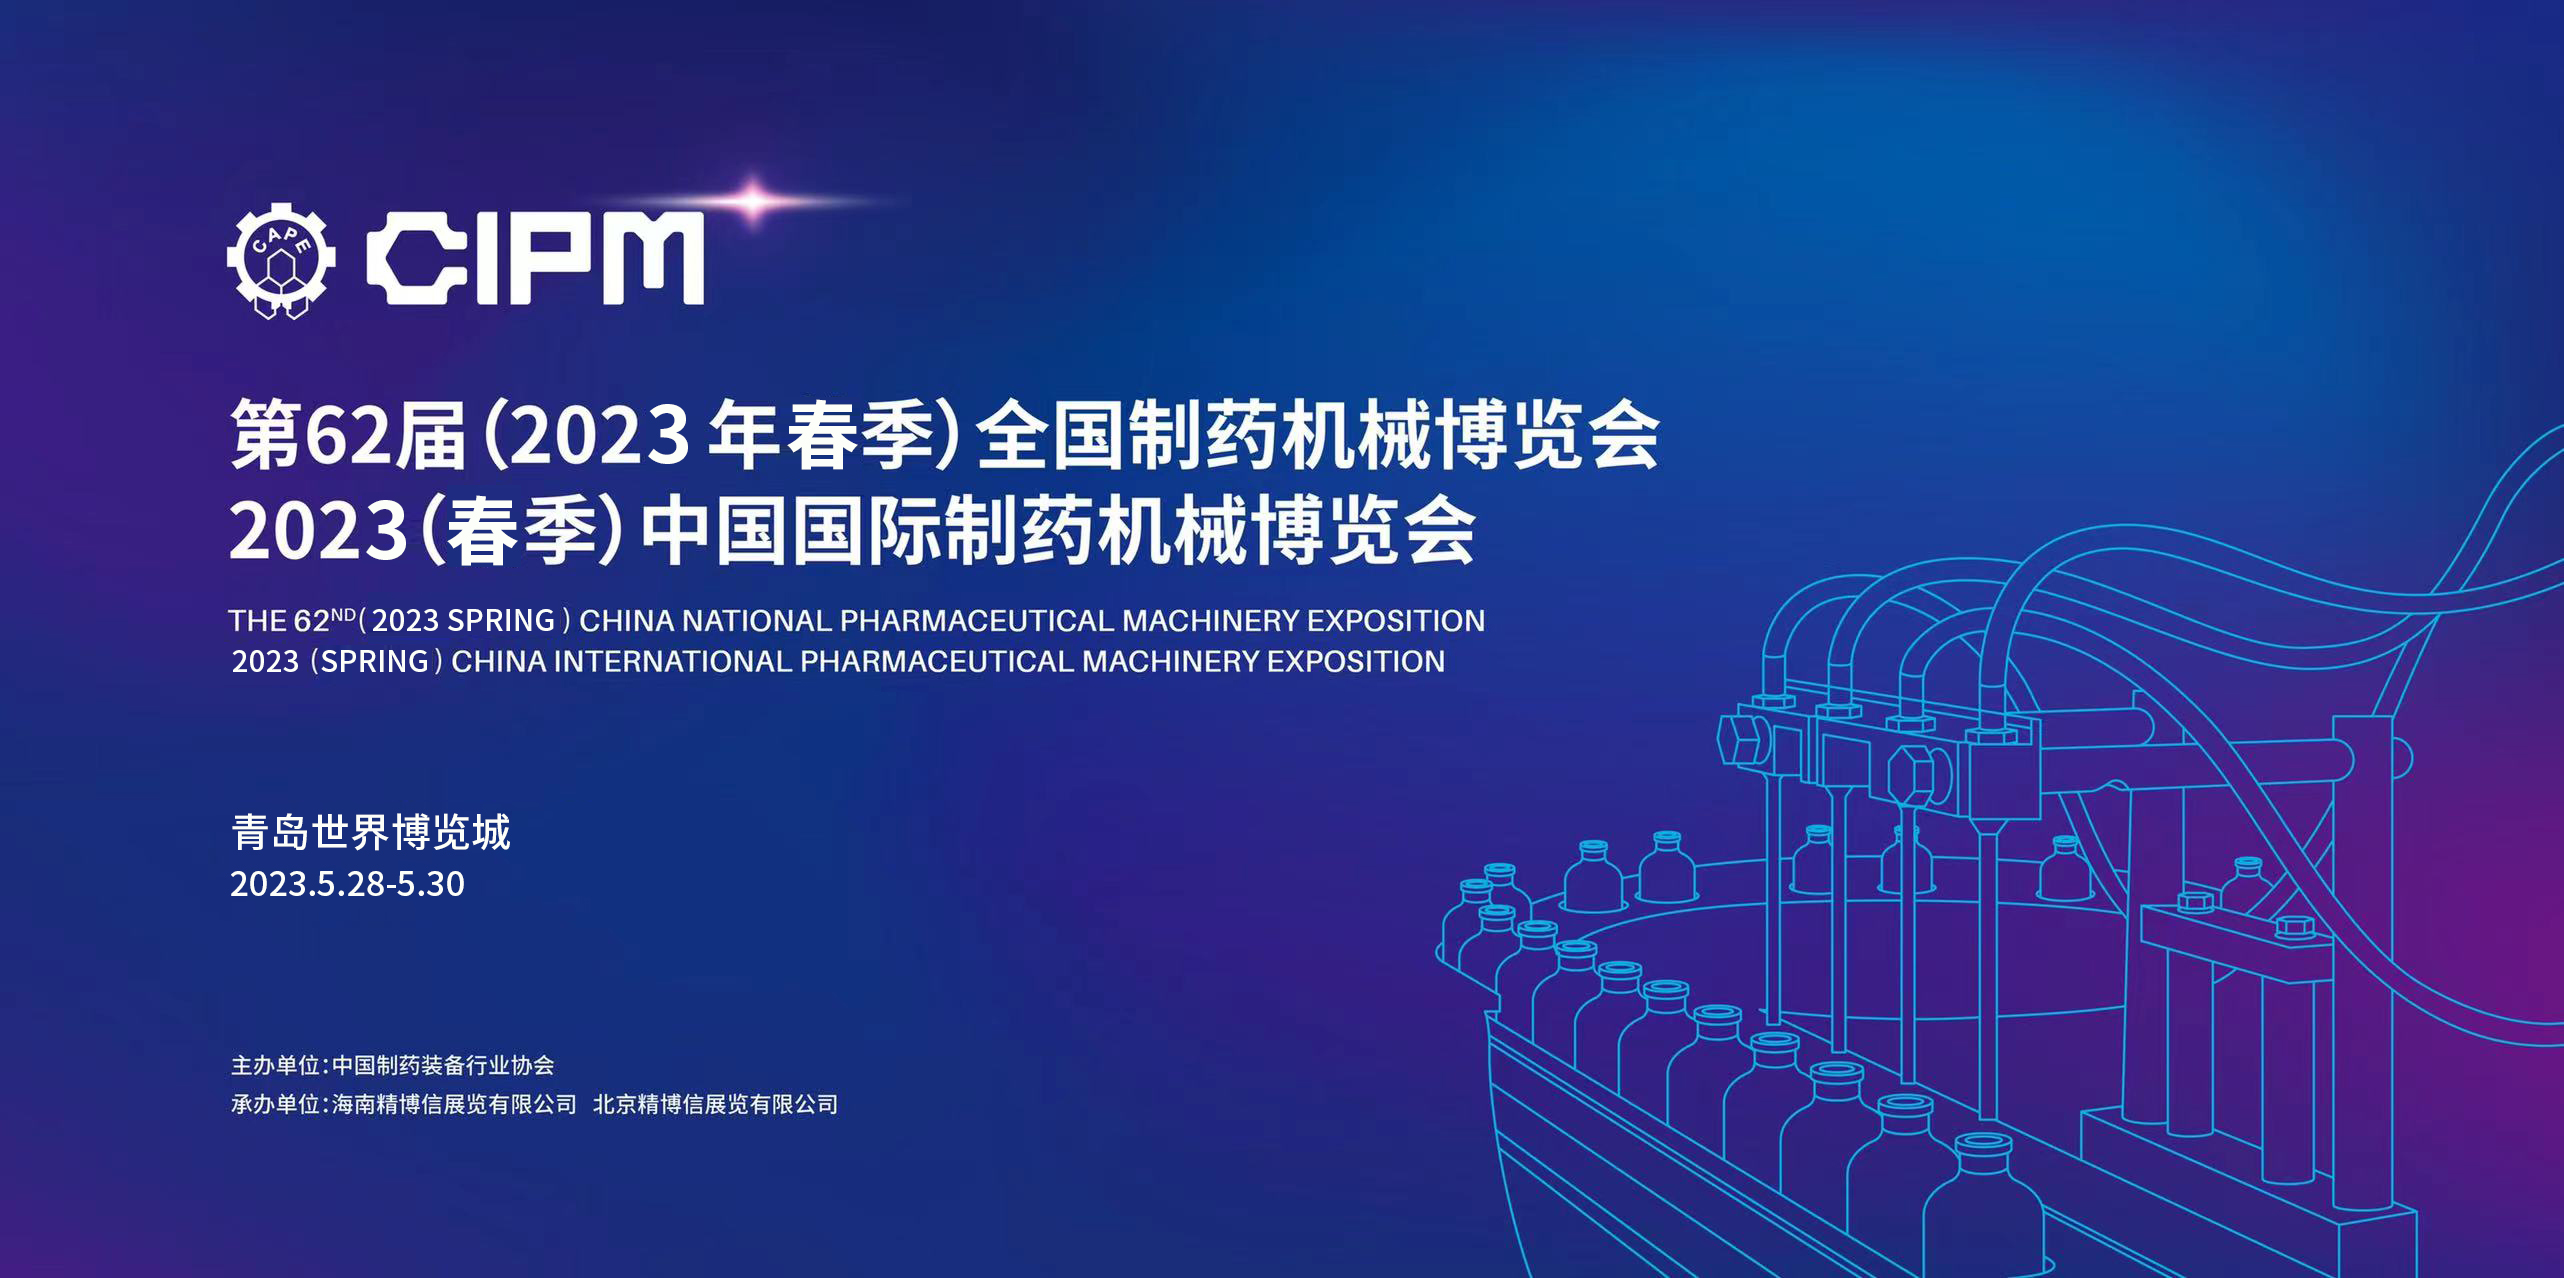 长沙英泰诚邀您参加第62届全国制药机械博览会 & 2023（春季）中国国际制药机械博览会